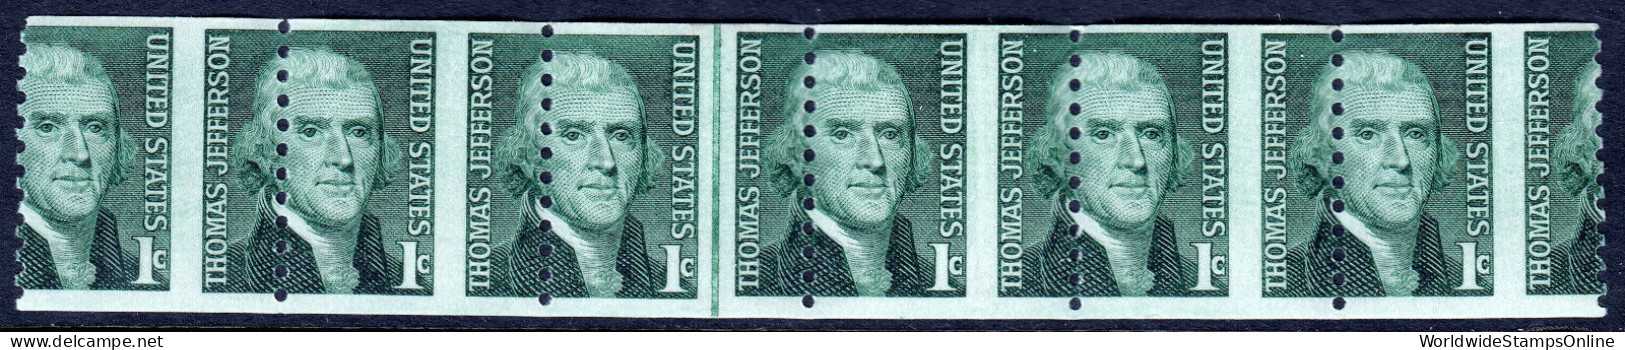 USA — SCOTT 1299 — 1¢ JEFFERSON COIL — LINE STRIP OF 6 - Varietà, Errori & Curiosità